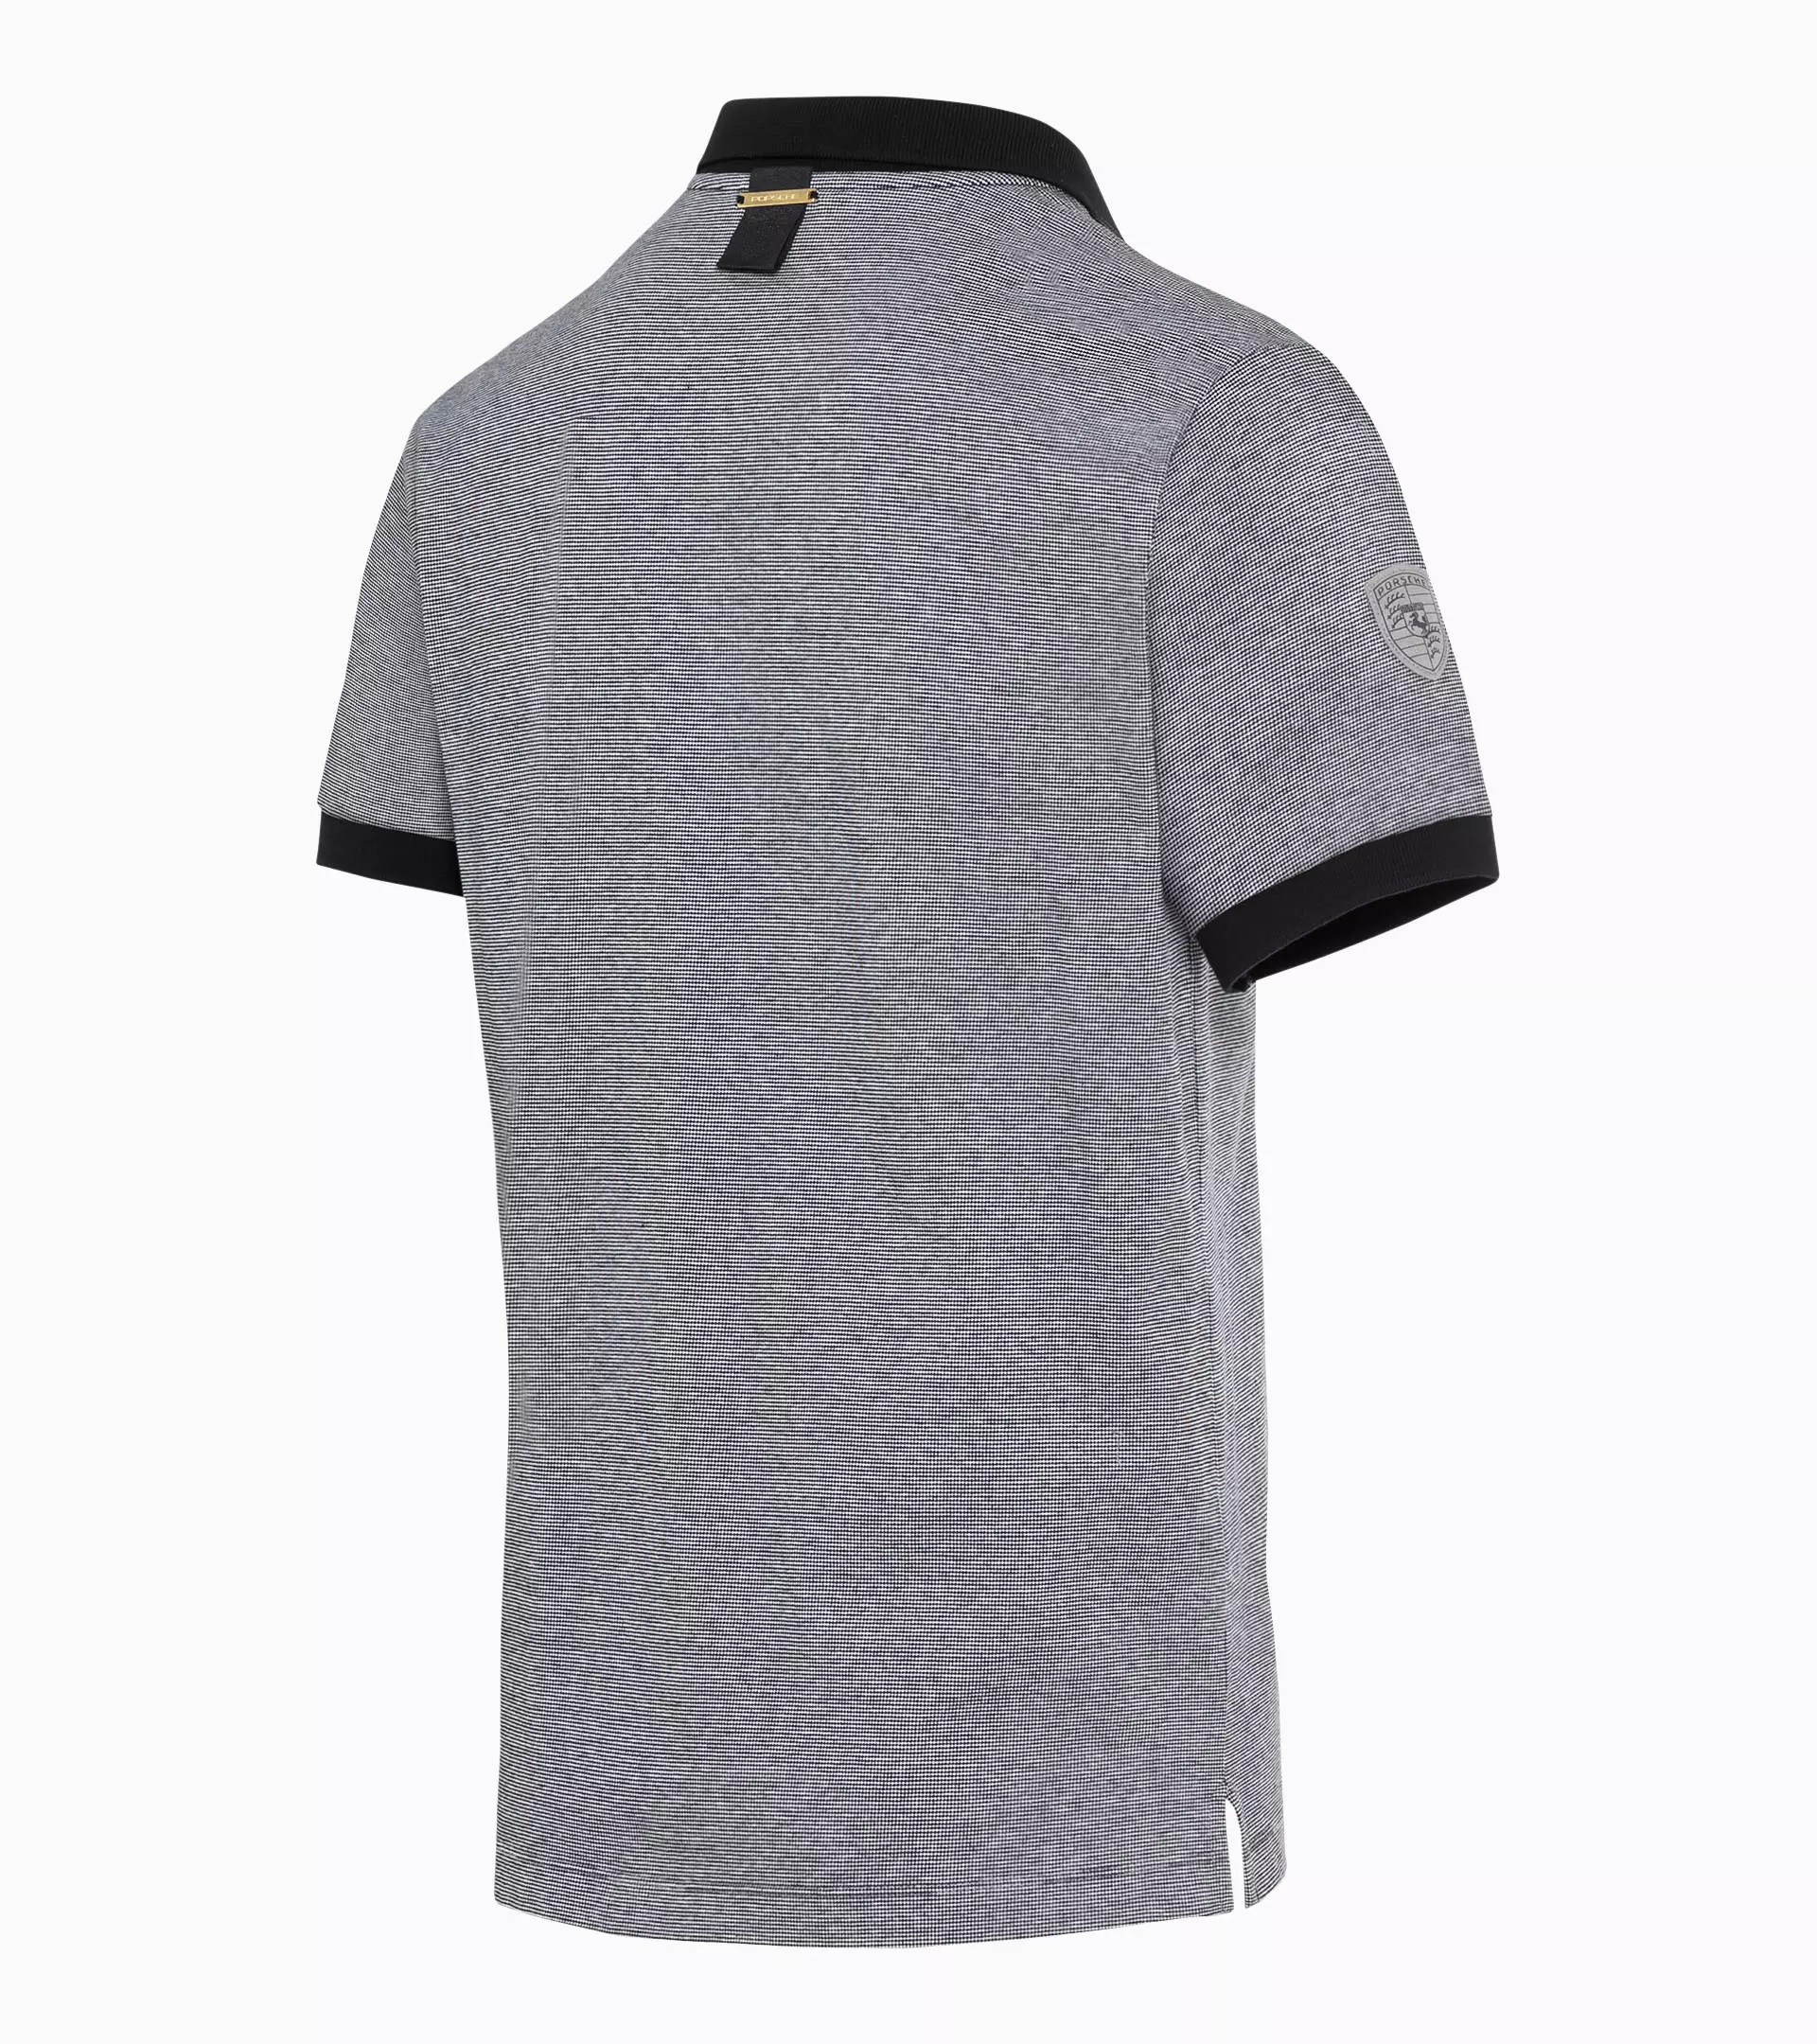 【新品未使用品】マクラーレンホンダオフィシャル 半袖ポロシャツ XL グレー